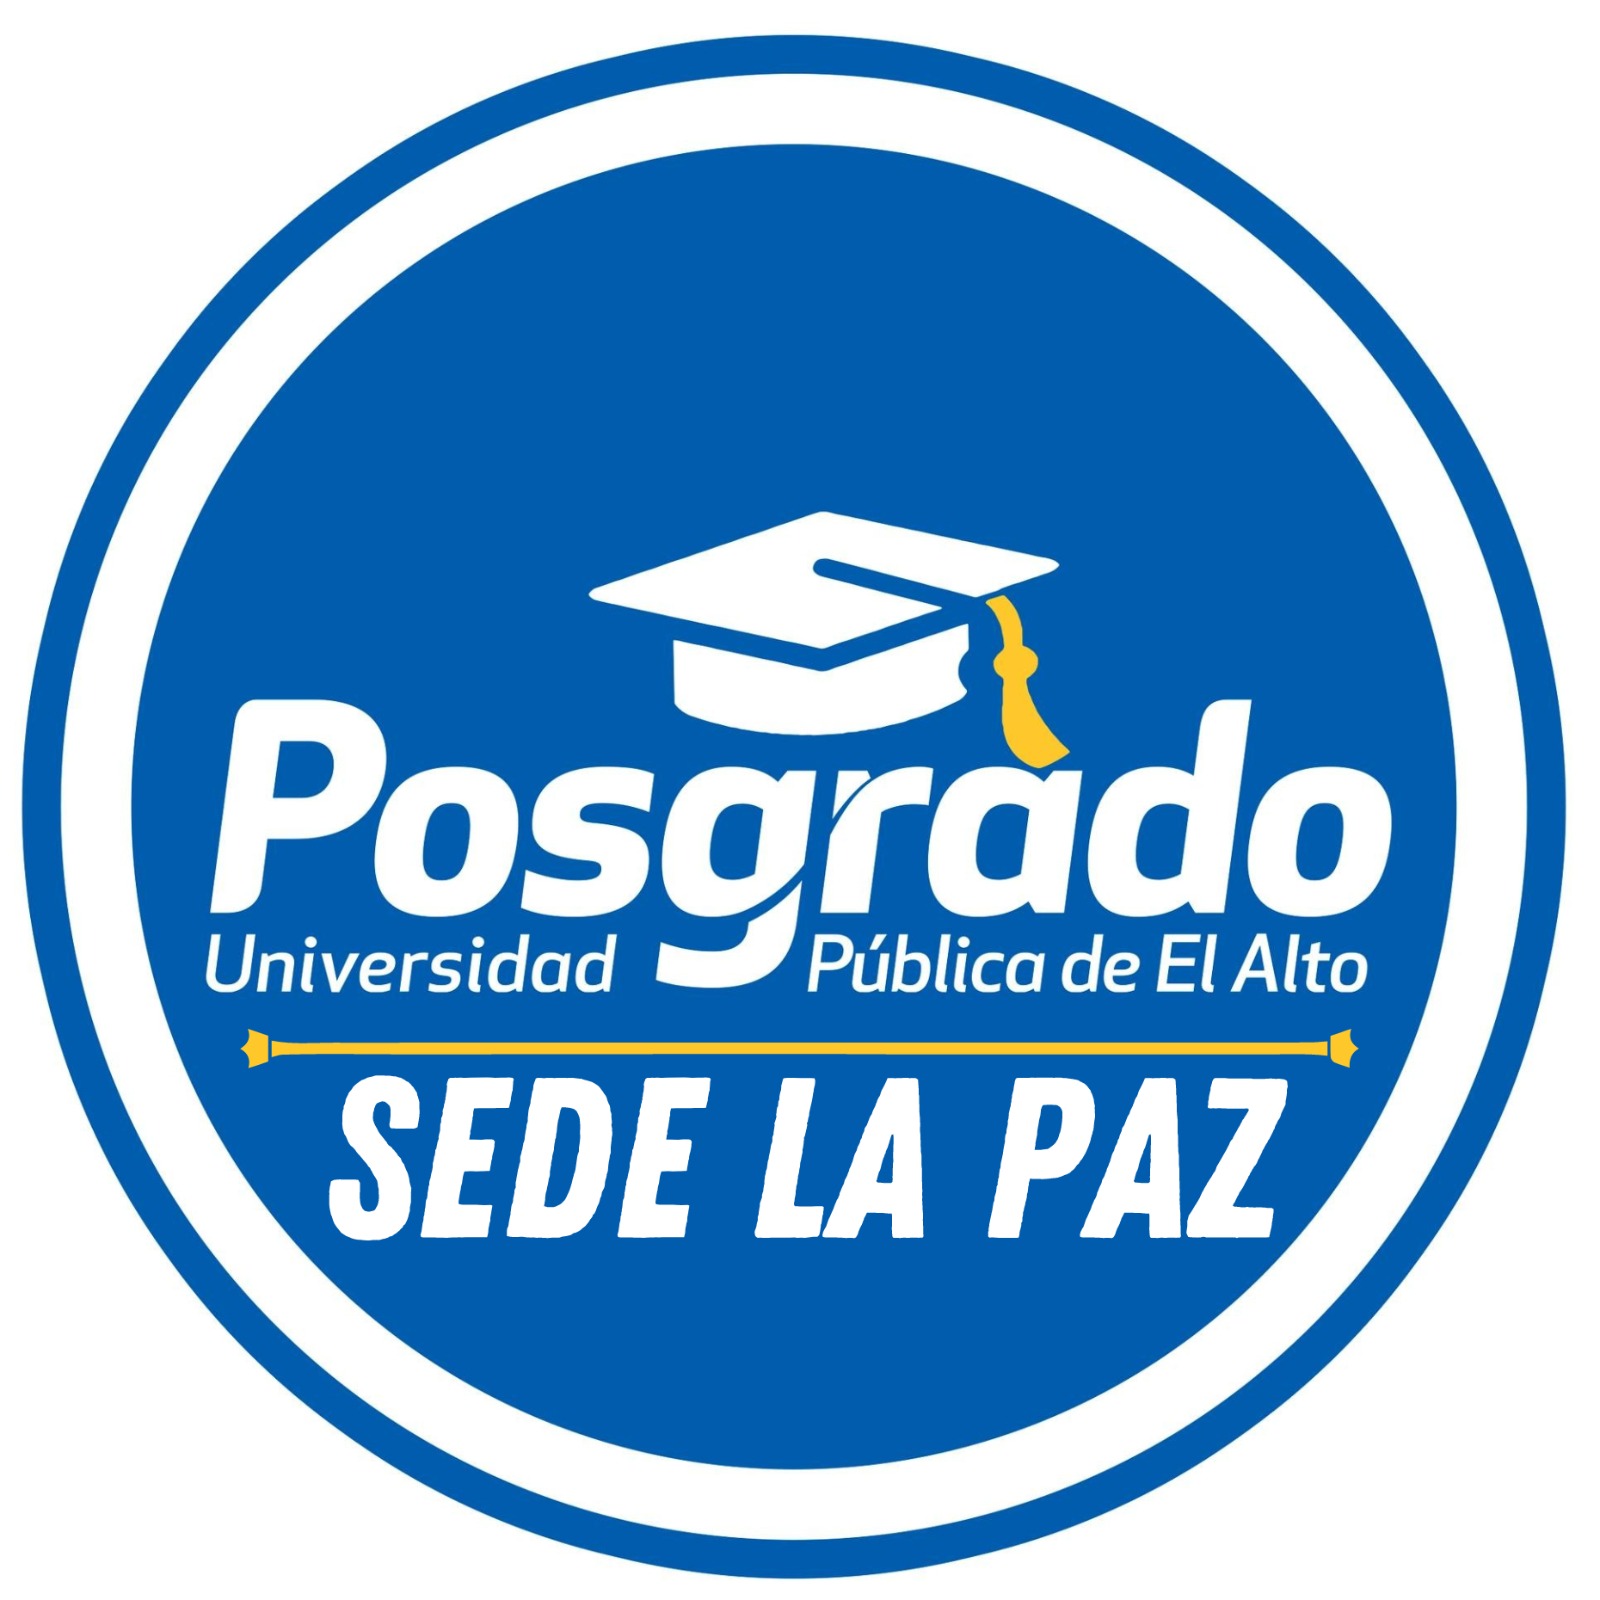 PosGrado-La Paz